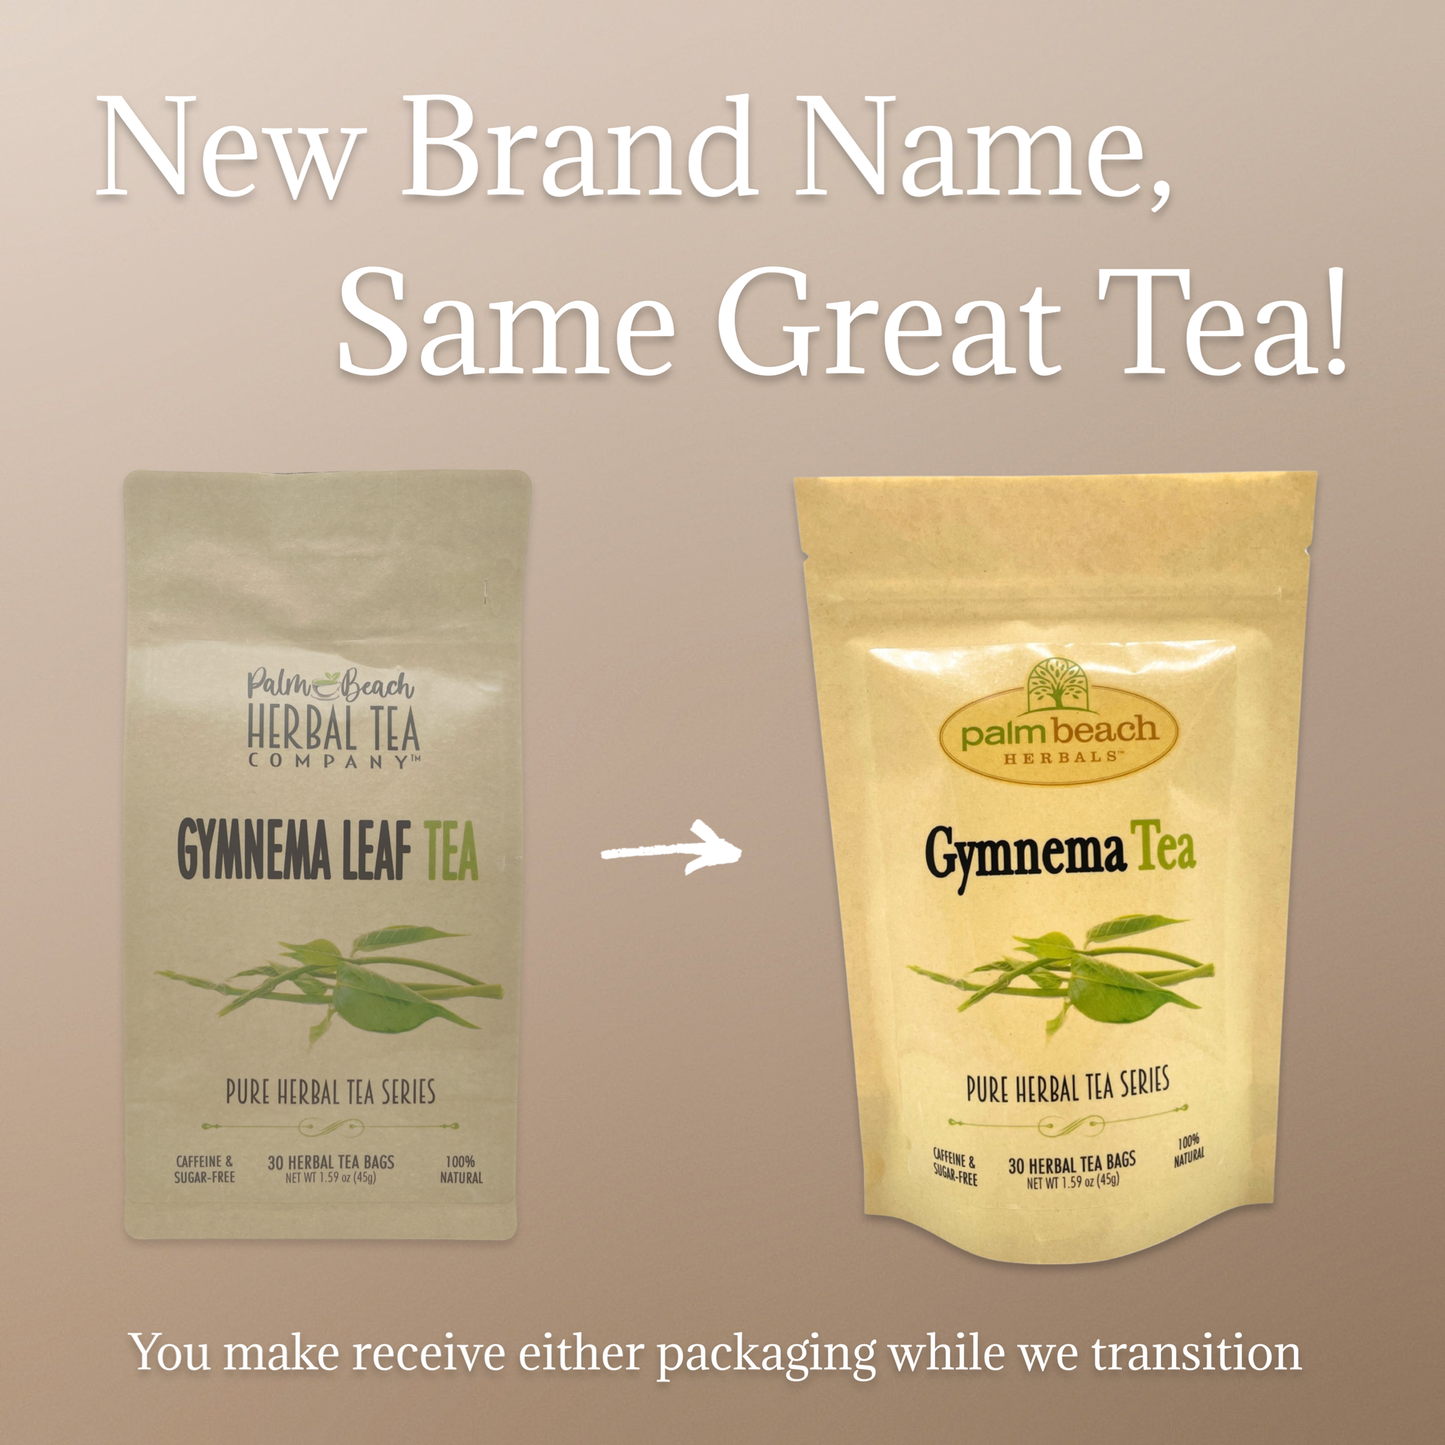 Gymnema Leaf Tea